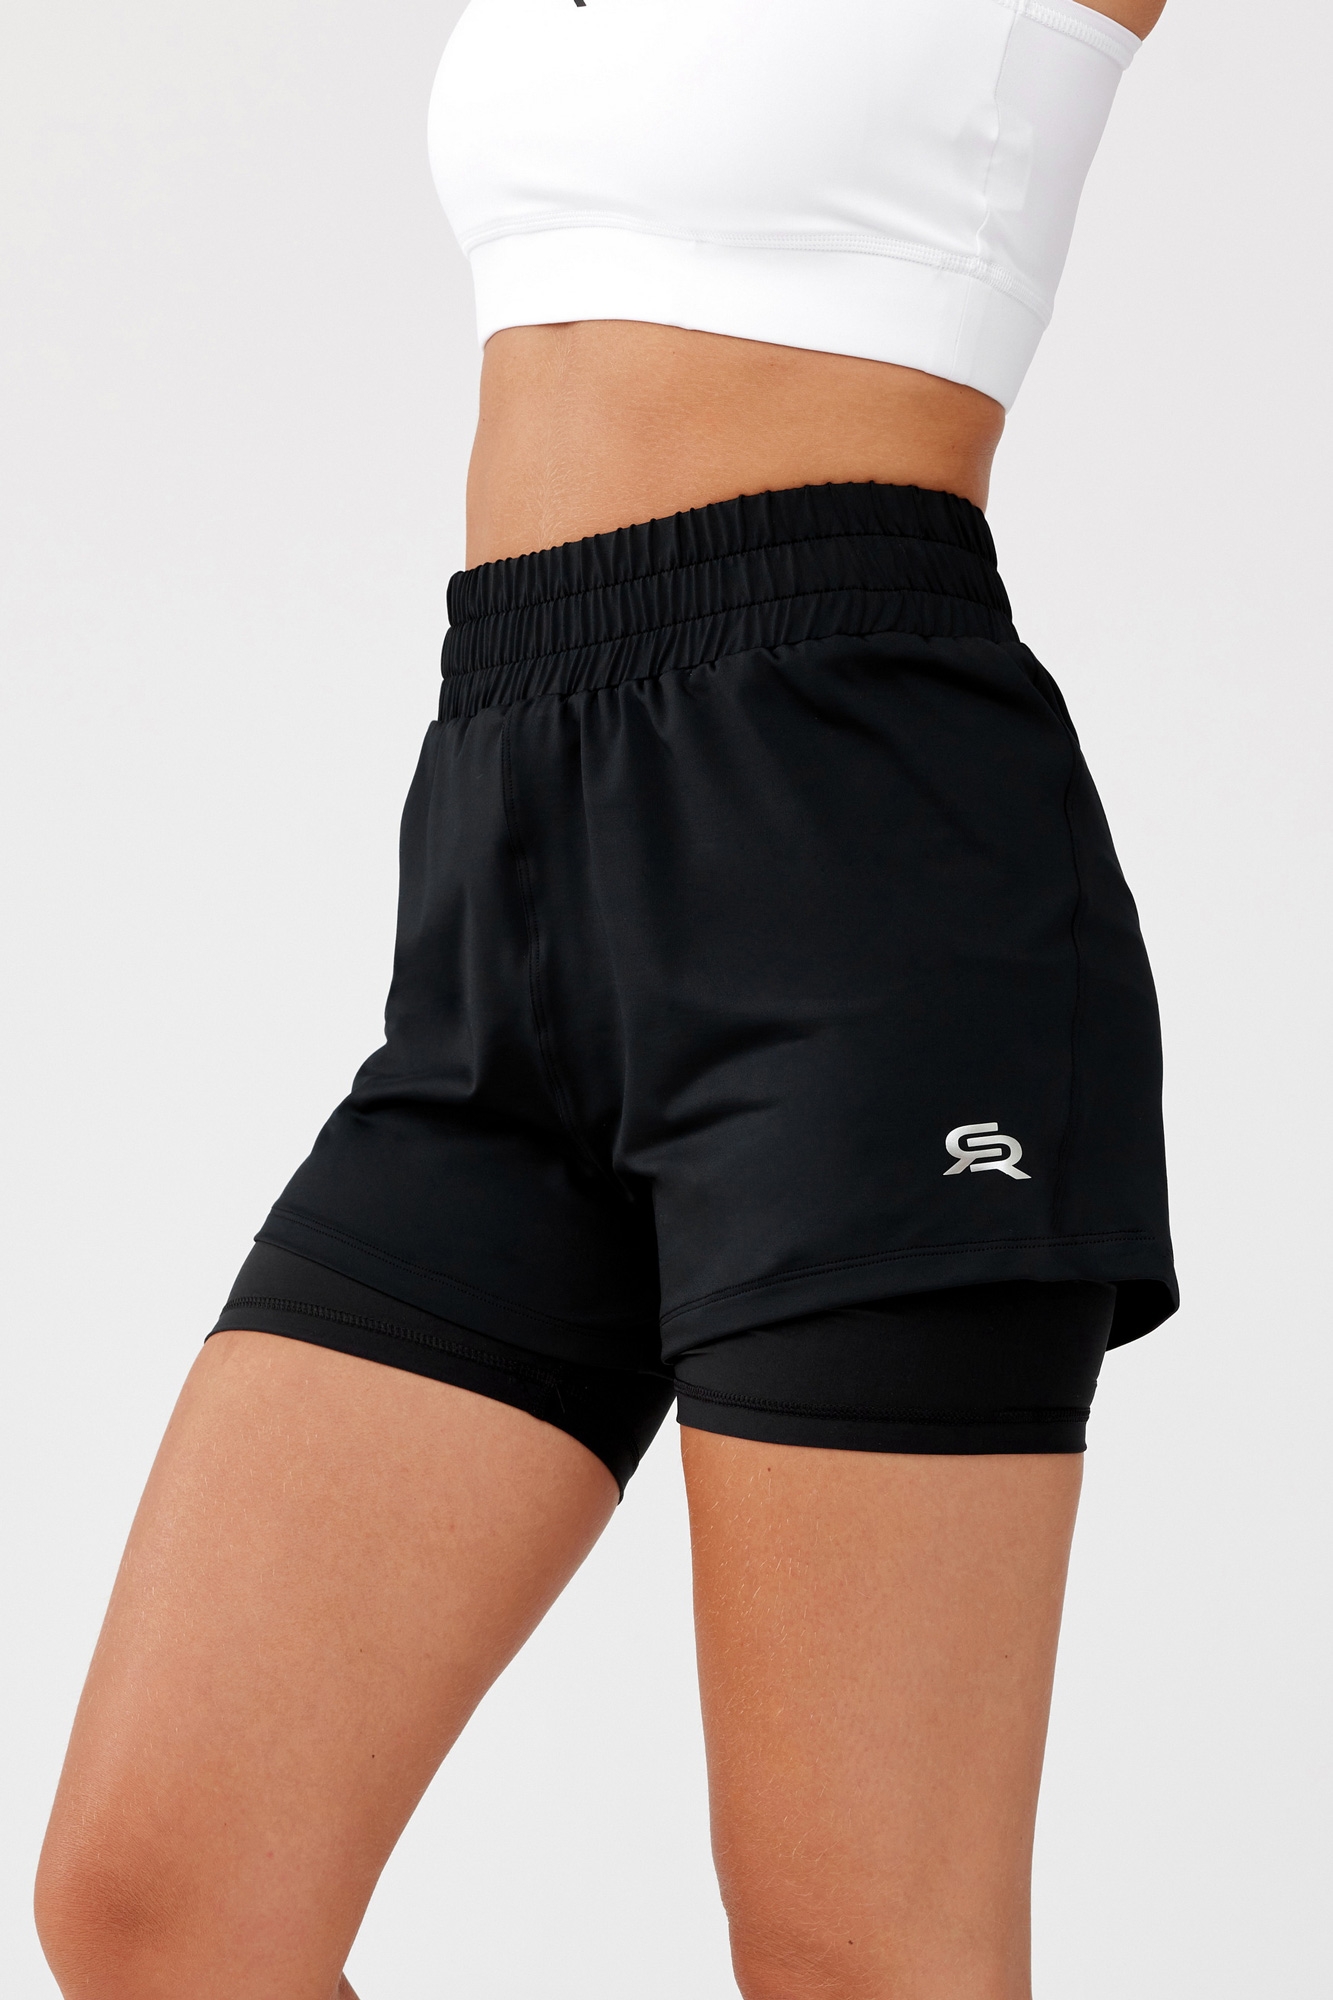 Rough Radical Woman's Shorts Pi Shorts